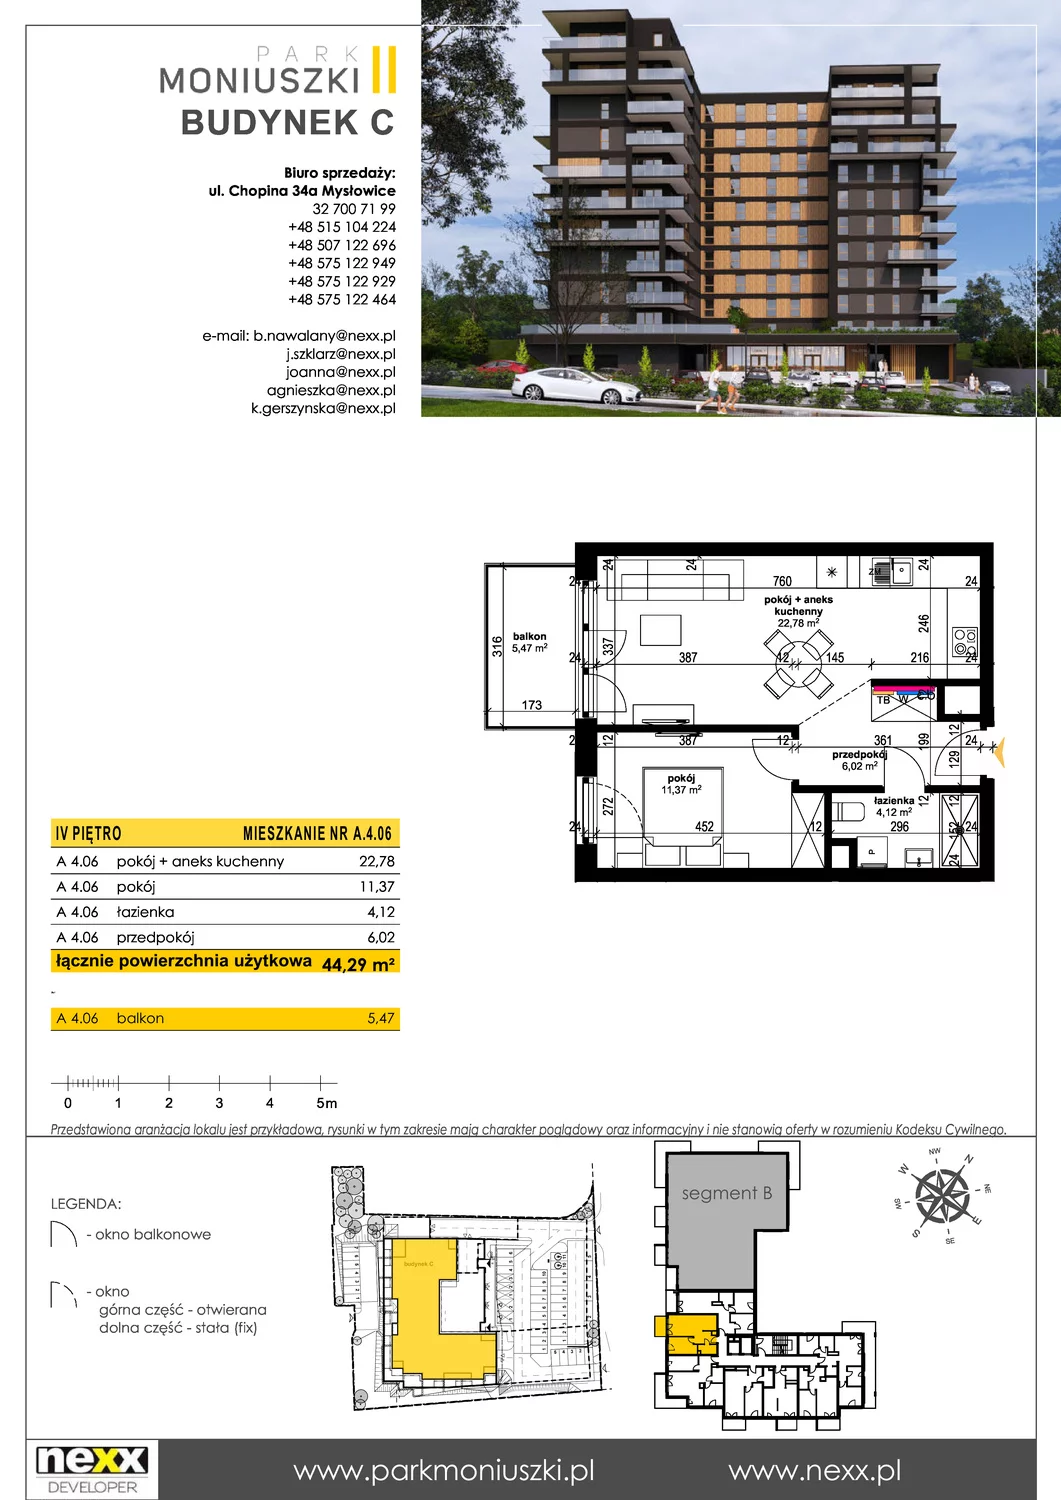 Mieszkanie 44,29 m², piętro 4, oferta nr A 4.06, Osiedle Park Moniuszki, Mysłowice, ul. Okrzei / Wielka Skotnica